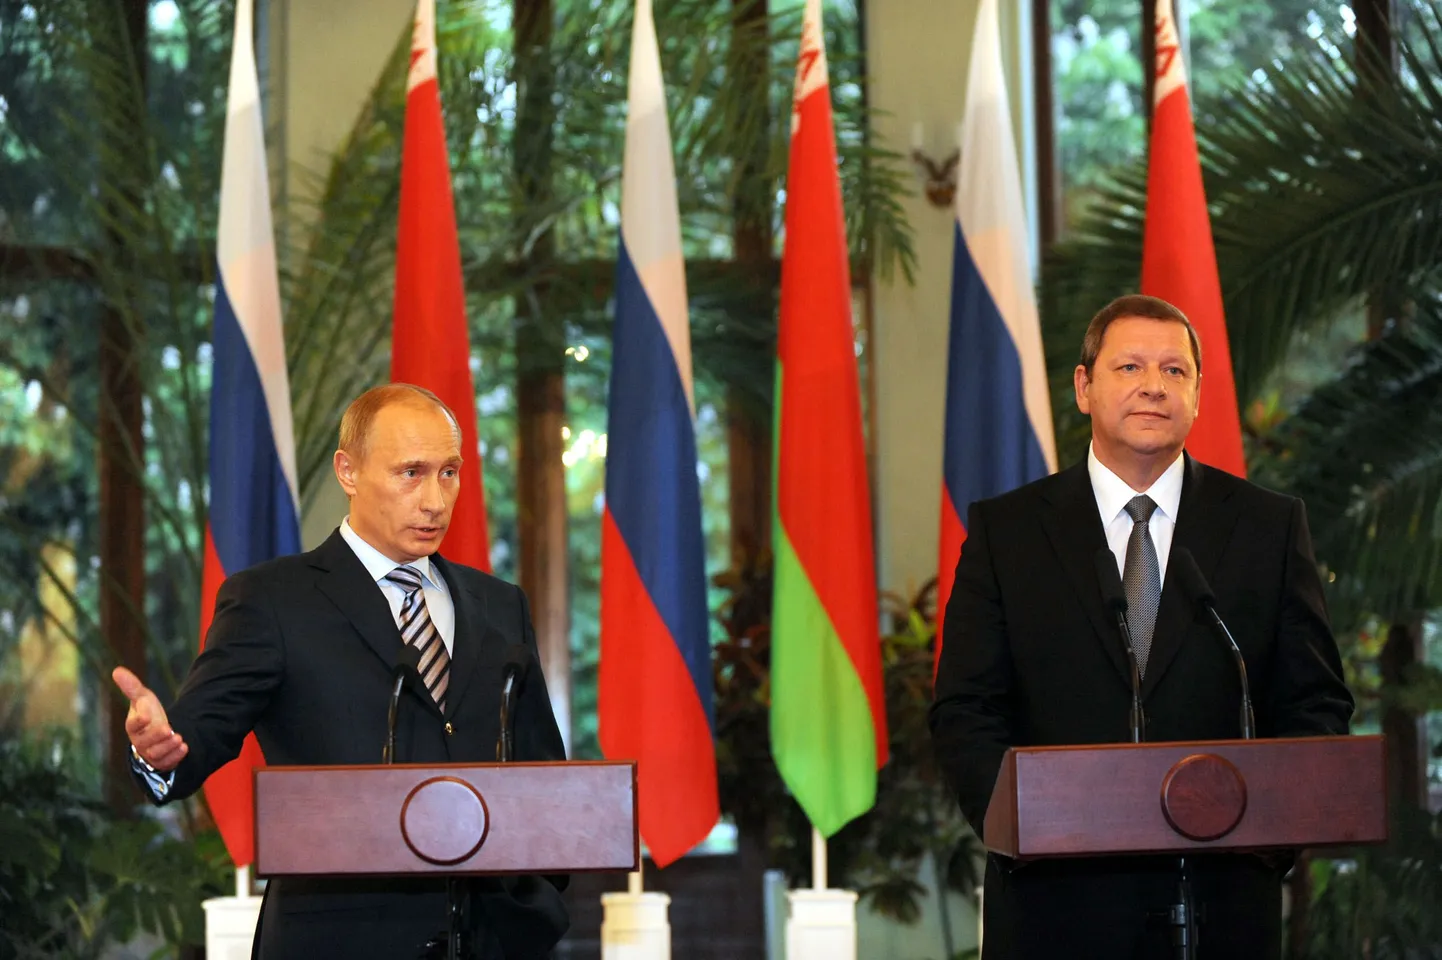 Vene Föderatsiooni peaminister Vladimir Putin (vasakul) kõnelemas pressikonverentsil Valgevene kolleegi Sergei Sidorski kõrval.